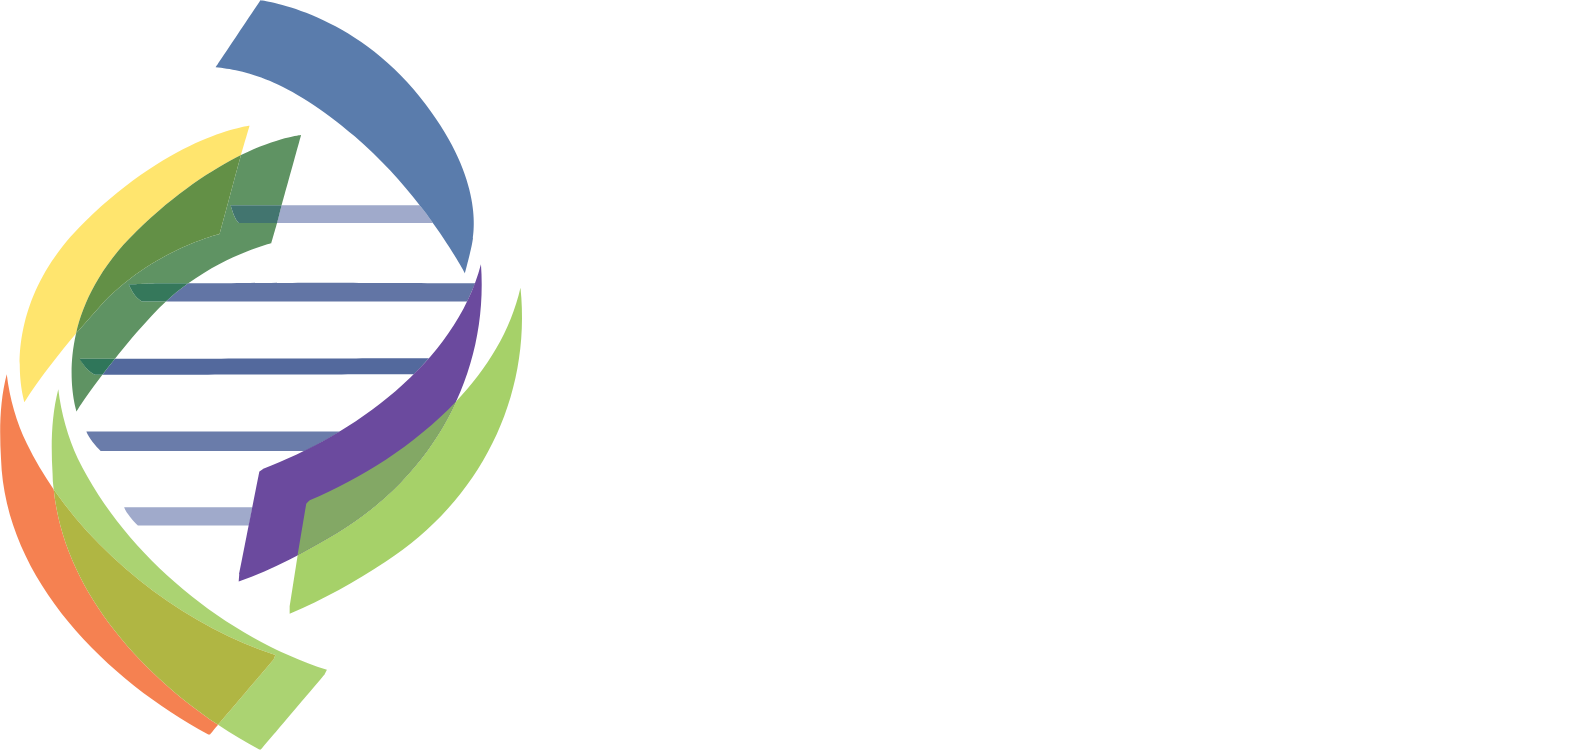 Enzo Biochem Logo groß für dunkle Hintergründe (transparentes PNG)